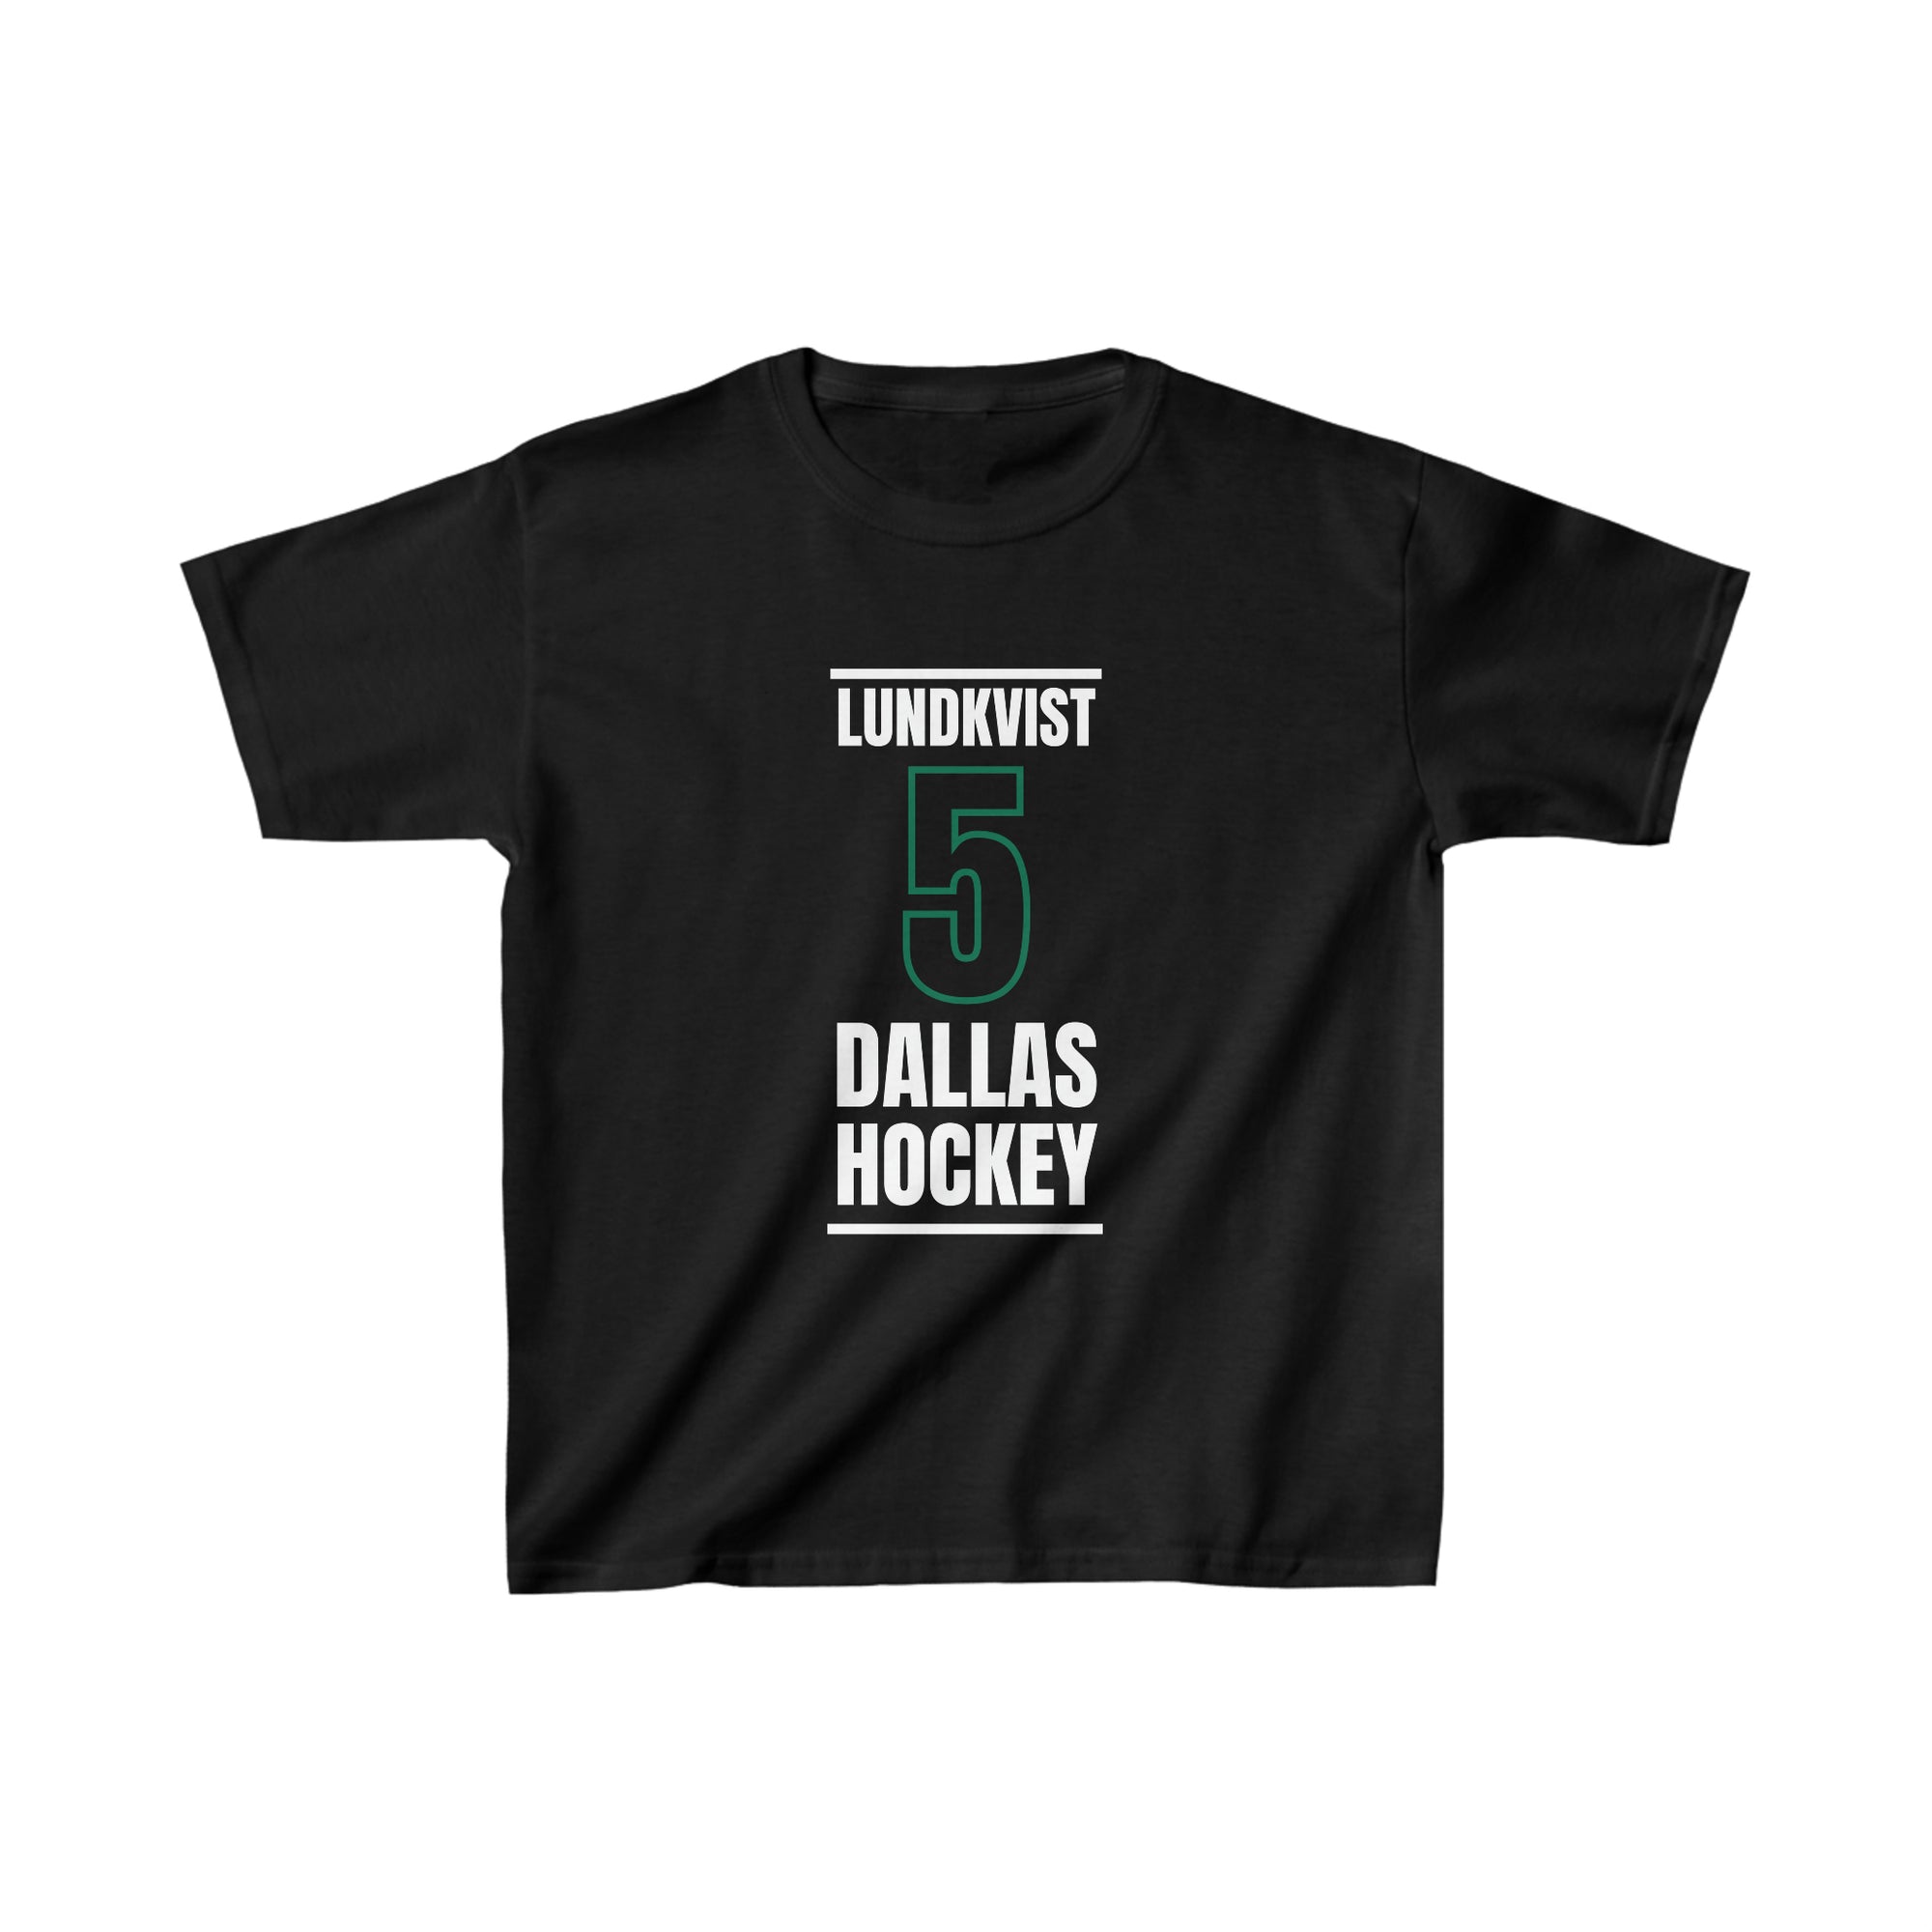 Lundkvist 5 Dallas Hockey Black Vertical Design Kids Tee